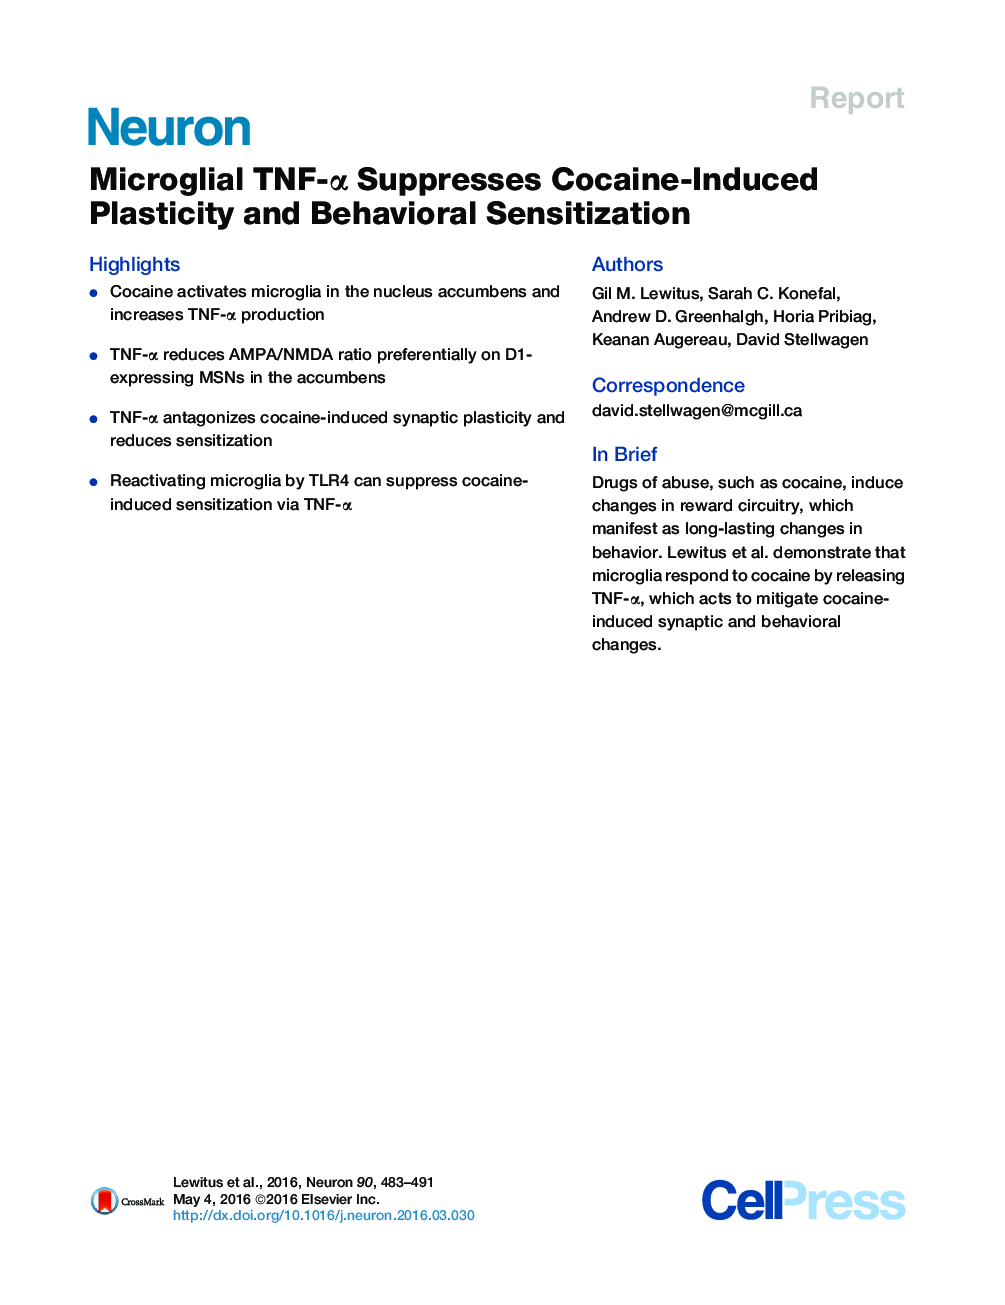 Microglial TNF-α Suppresses Cocaine-Induced Plasticity and Behavioral Sensitization